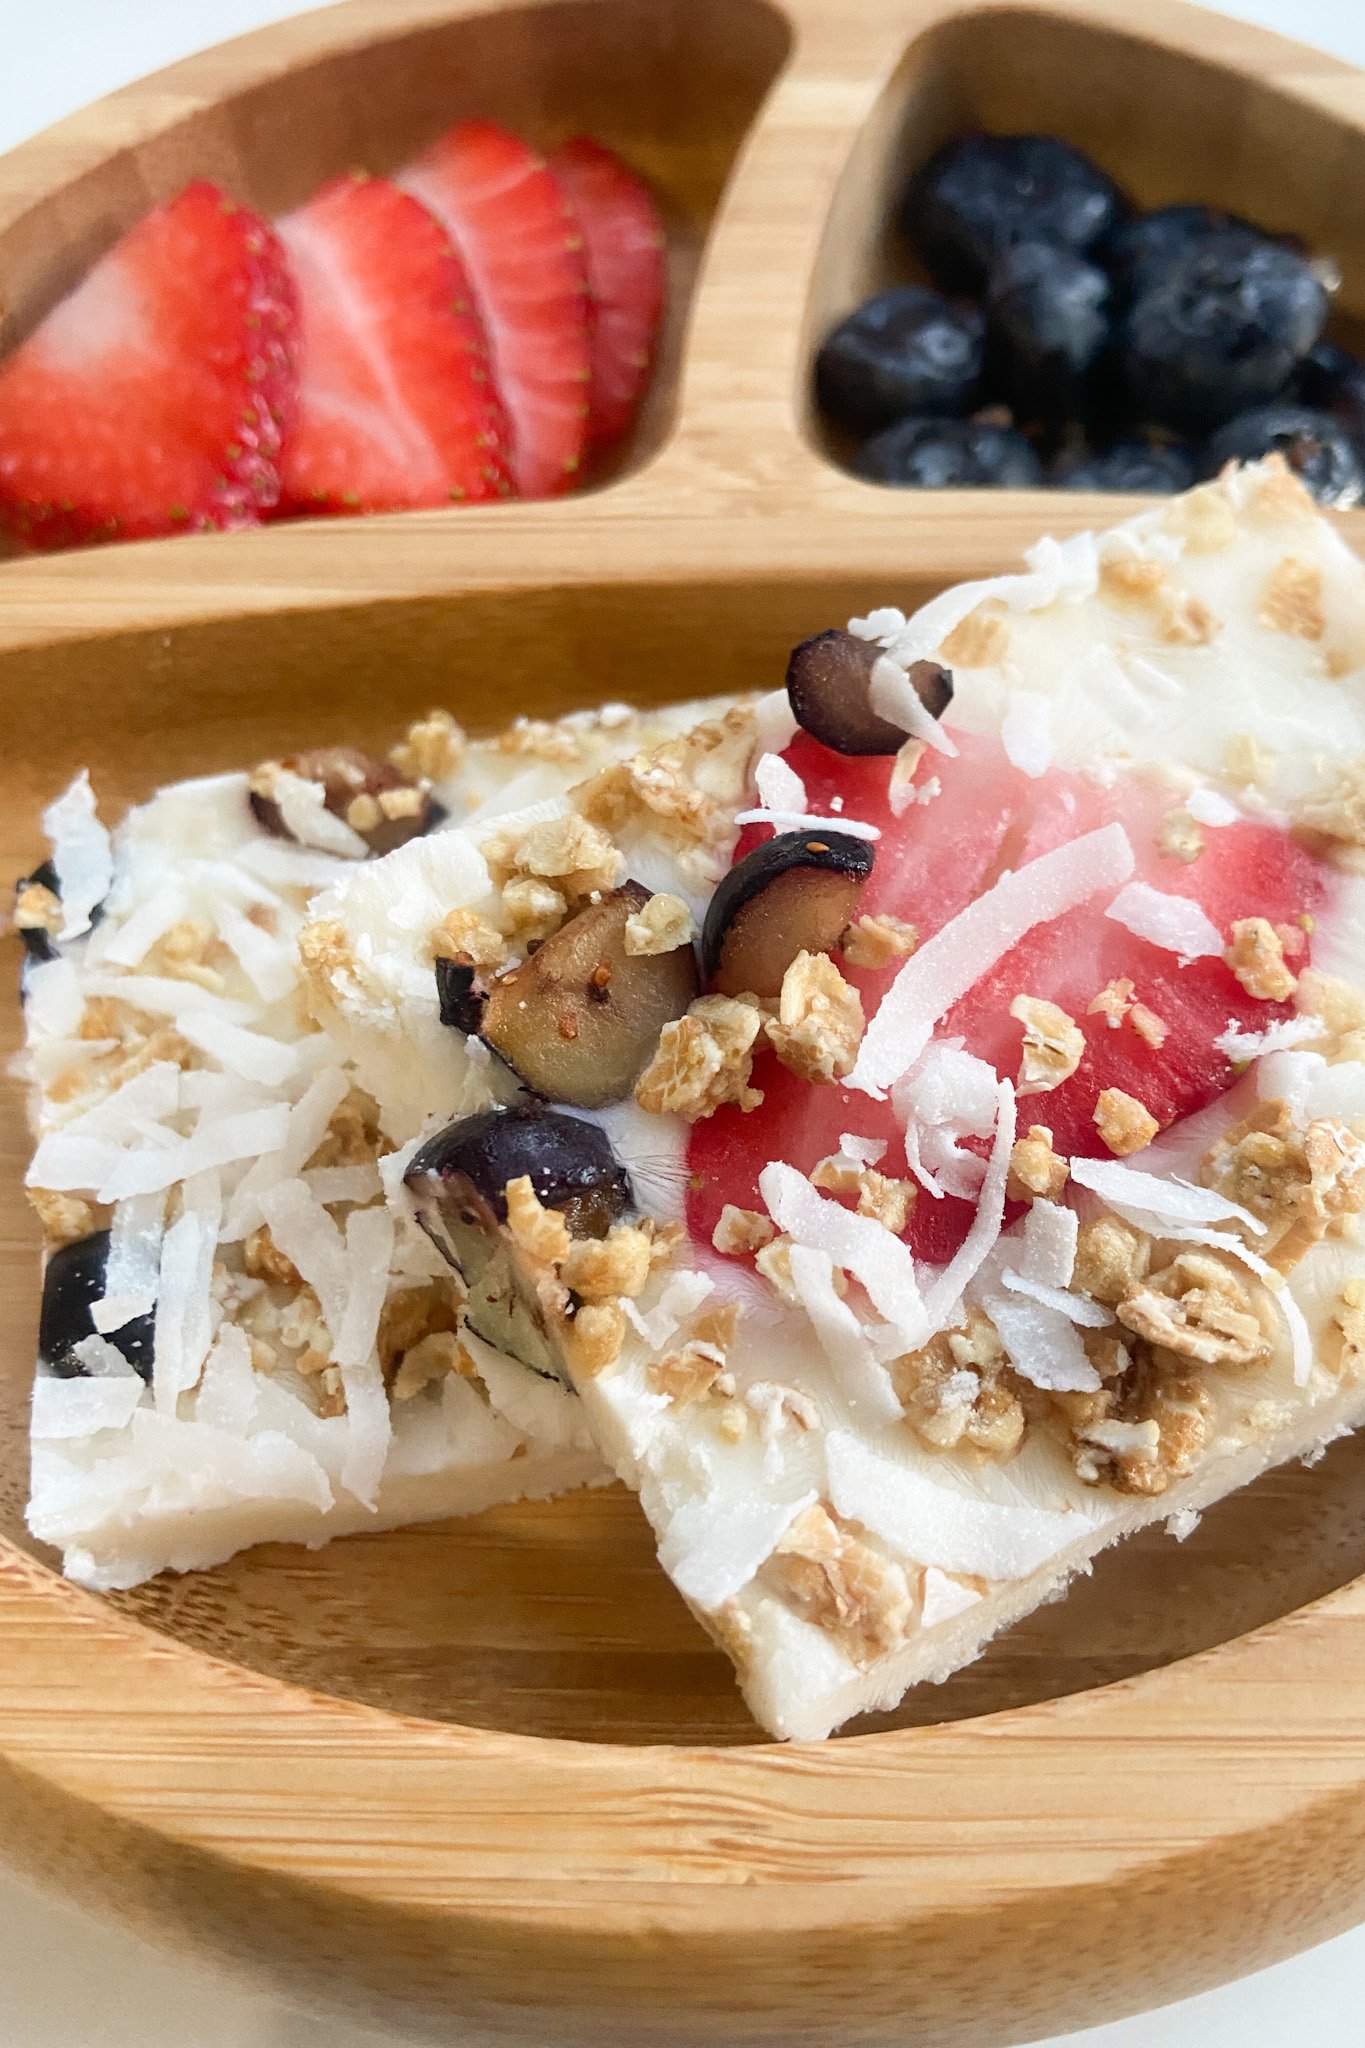 Frozen yoghurt bark served with berries